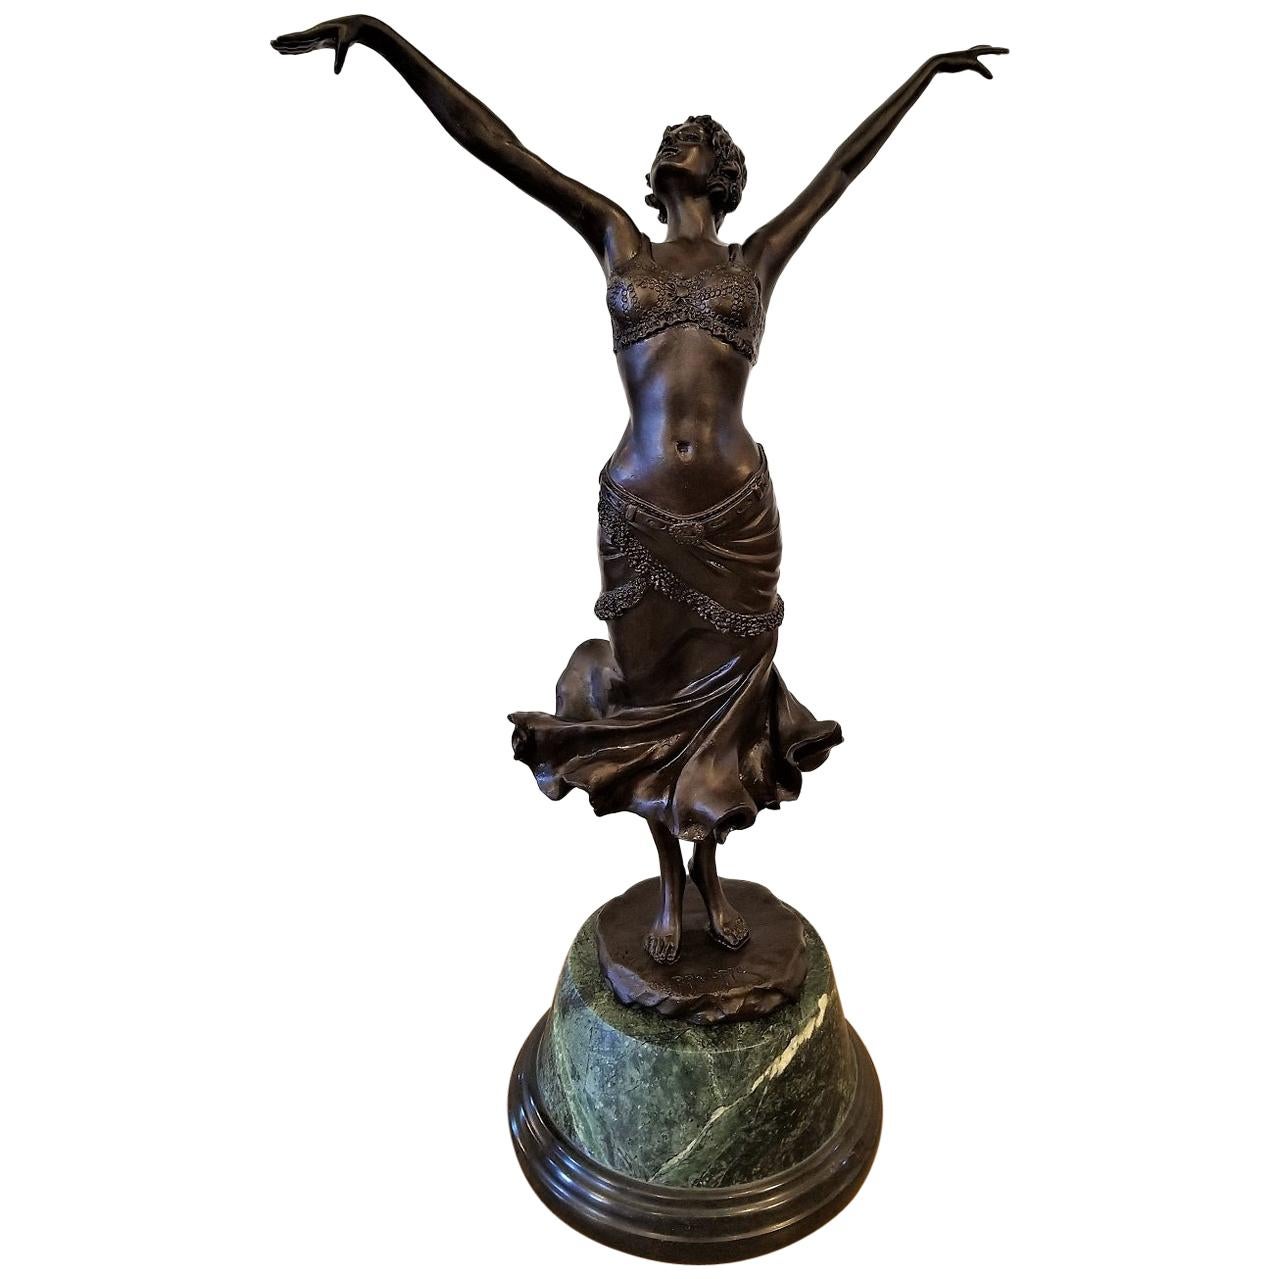 Beautiful Art Deco bronze lady woman dancer sculpture nouveau decor Free SHIPP!! 